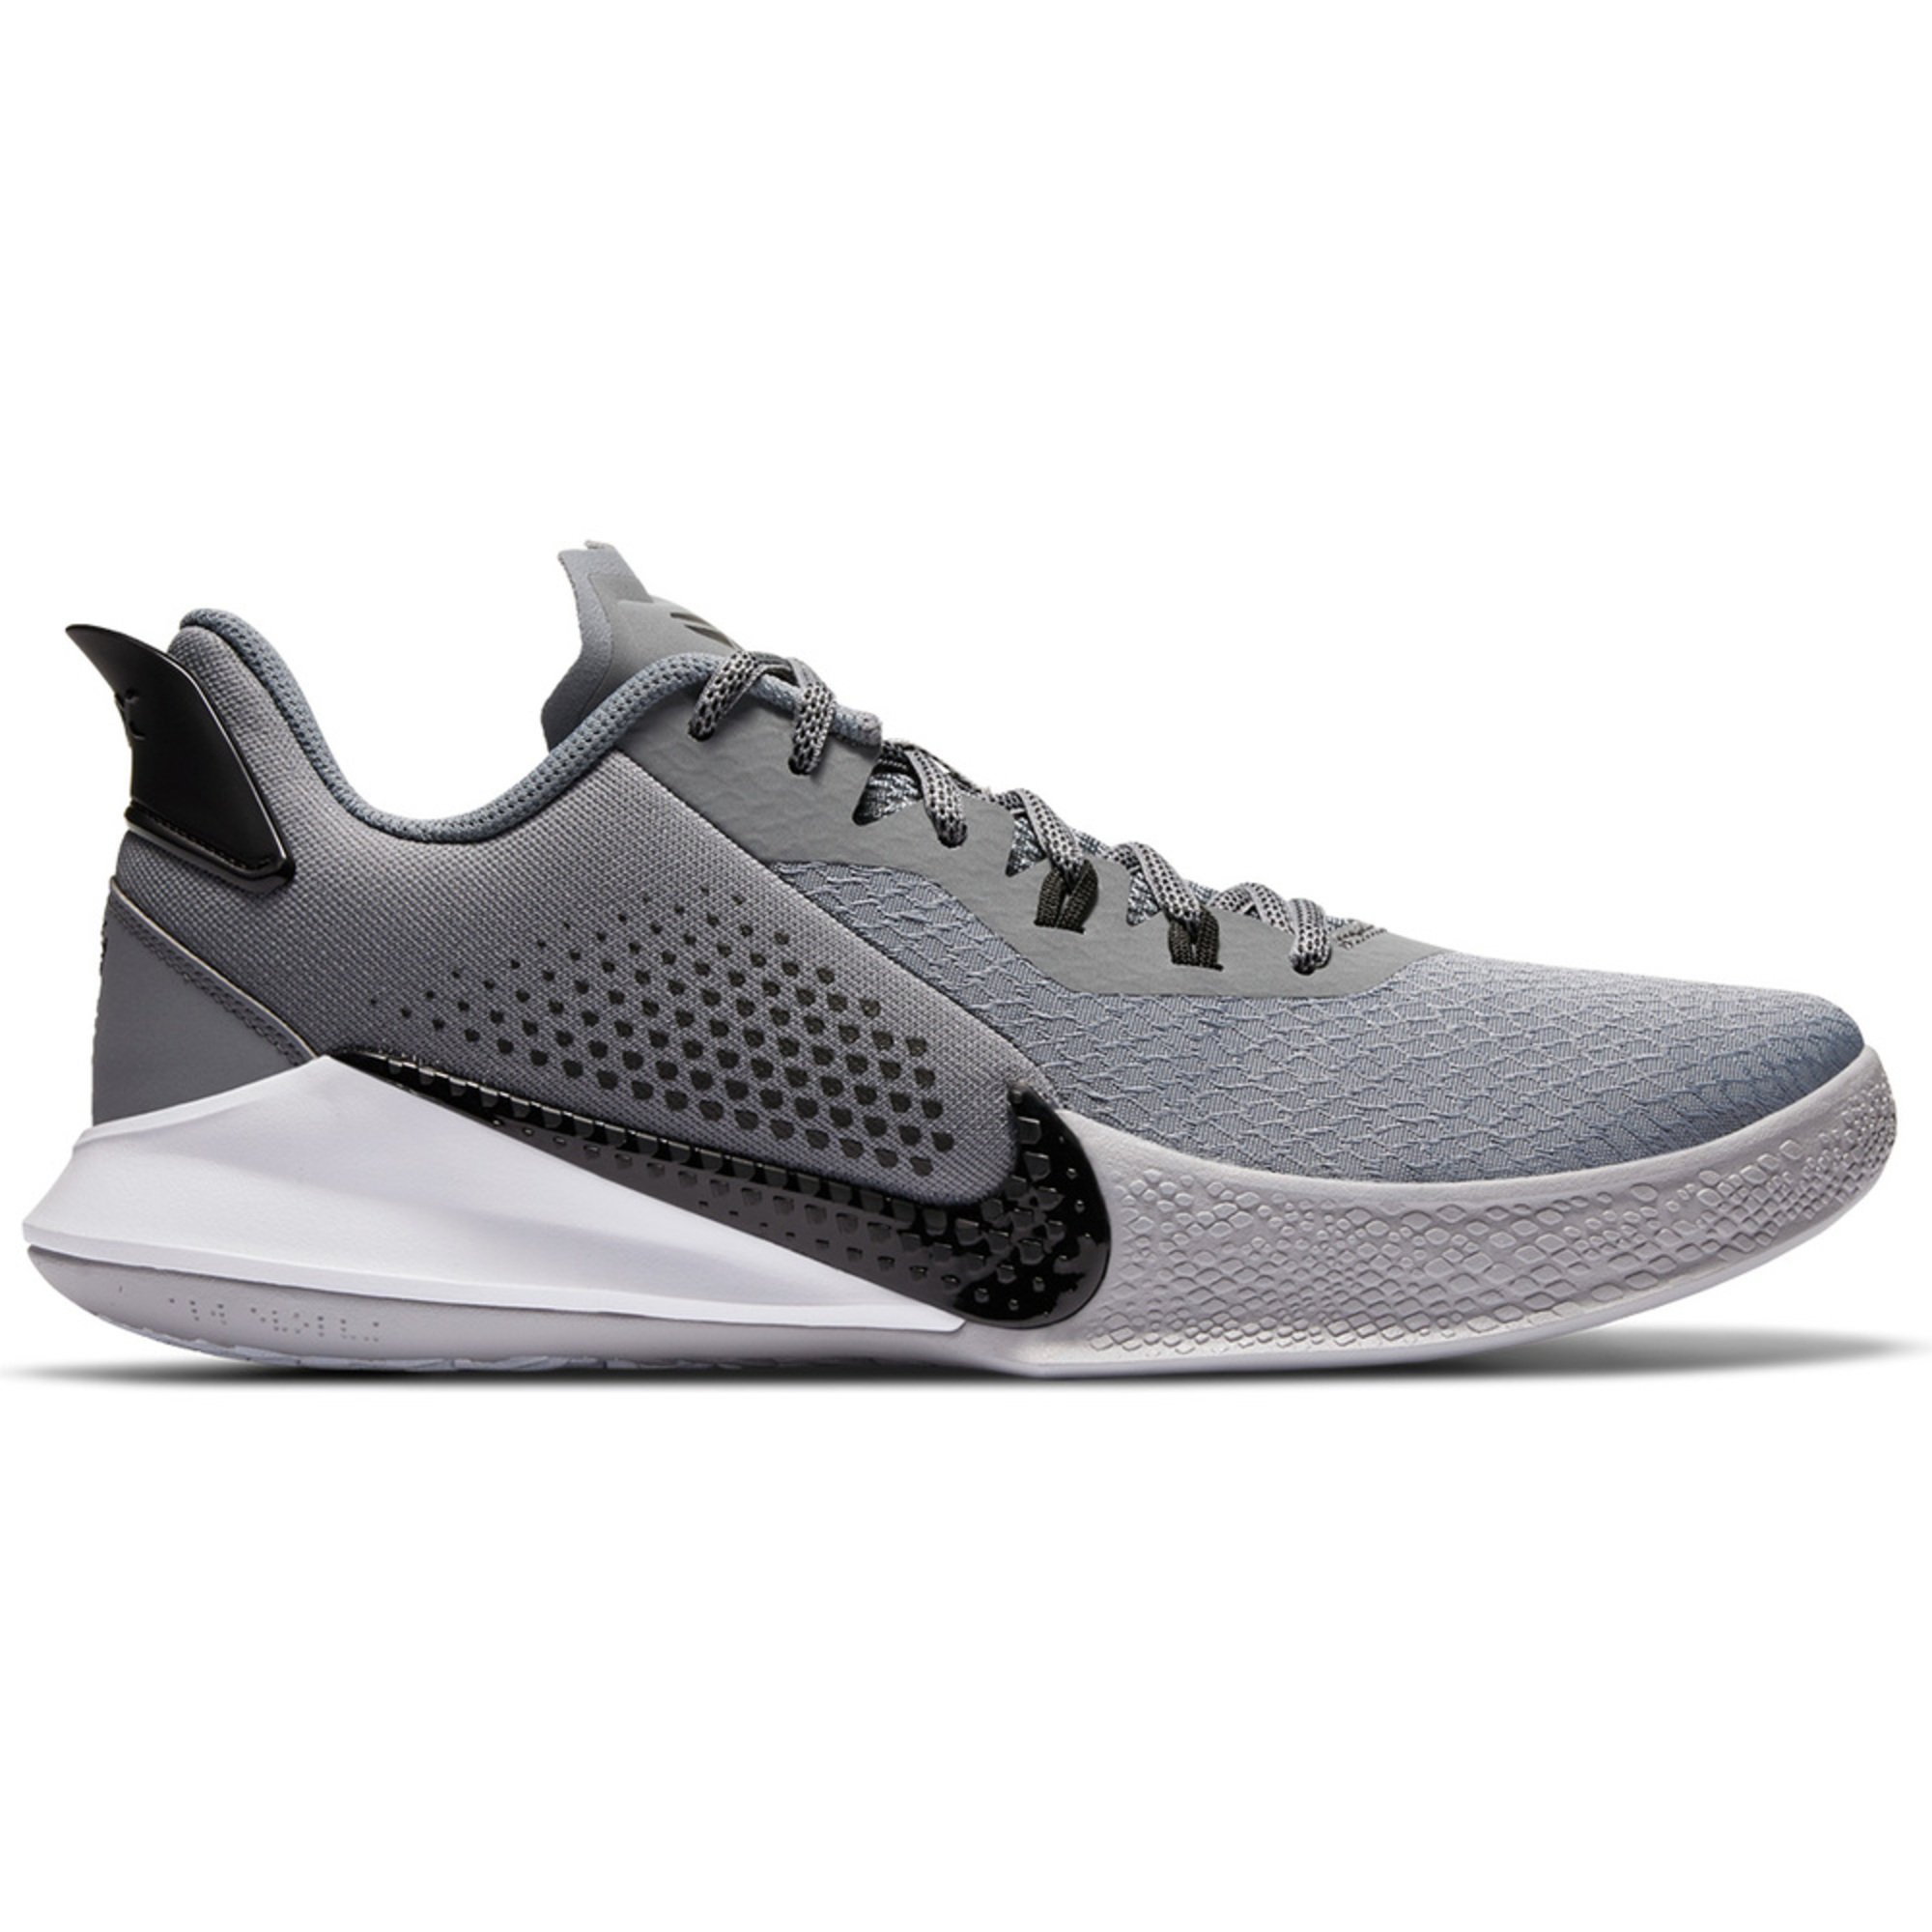 Nike Men's Mamba Fury Basketball Shoe | Men's Basketball Shoes | Shoes ...